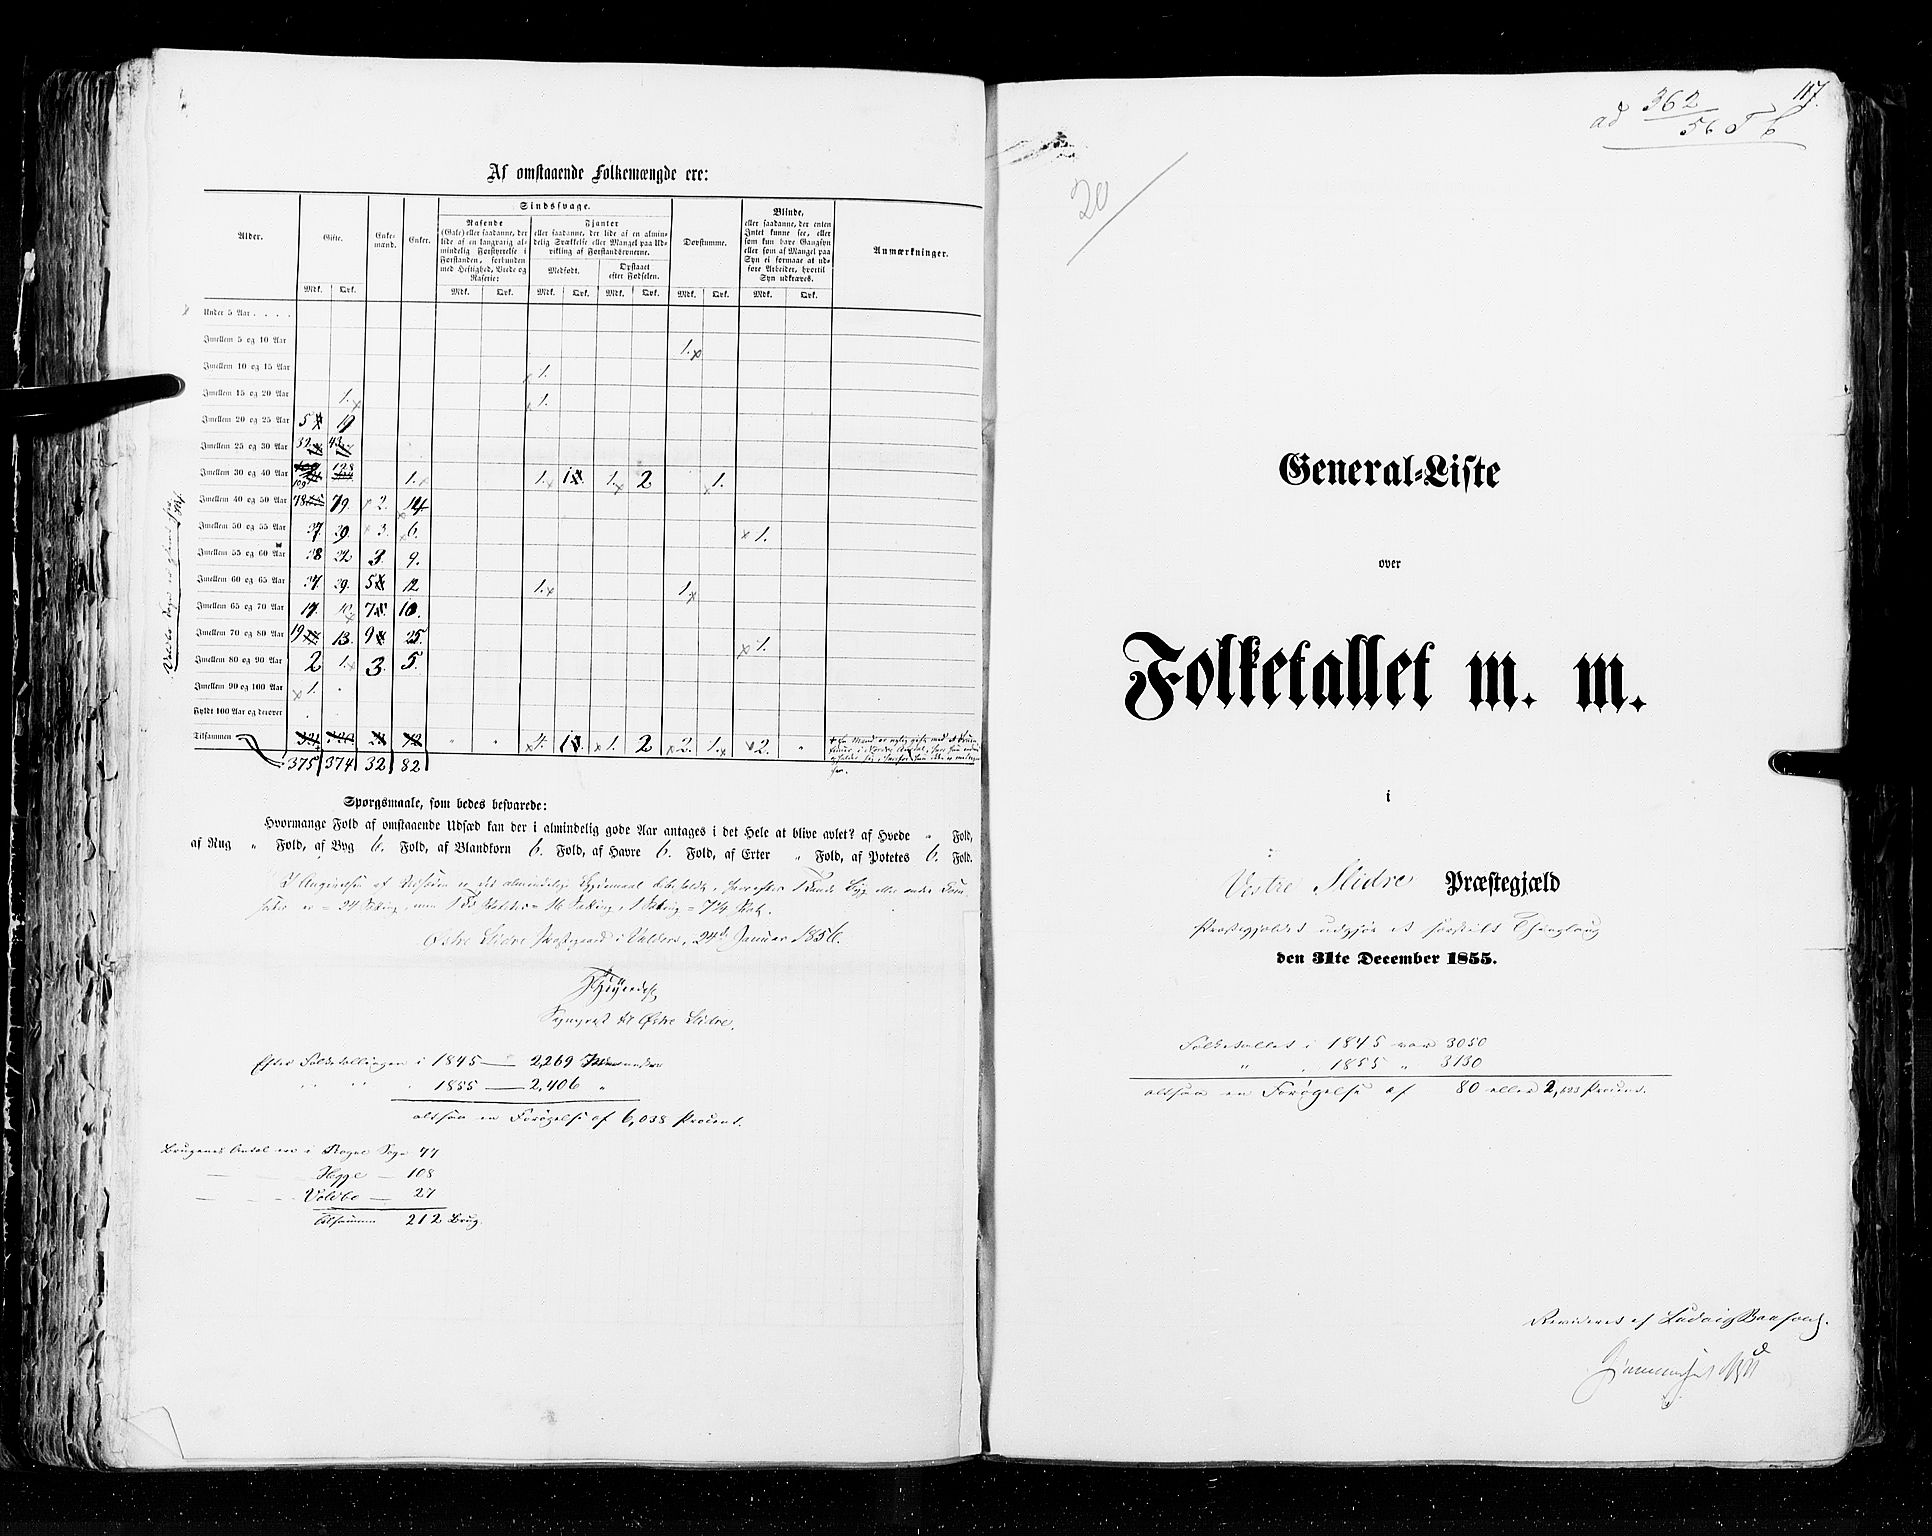 RA, Census 1855, vol. 2: Kristians amt, Buskerud amt og Jarlsberg og Larvik amt, 1855, p. 117